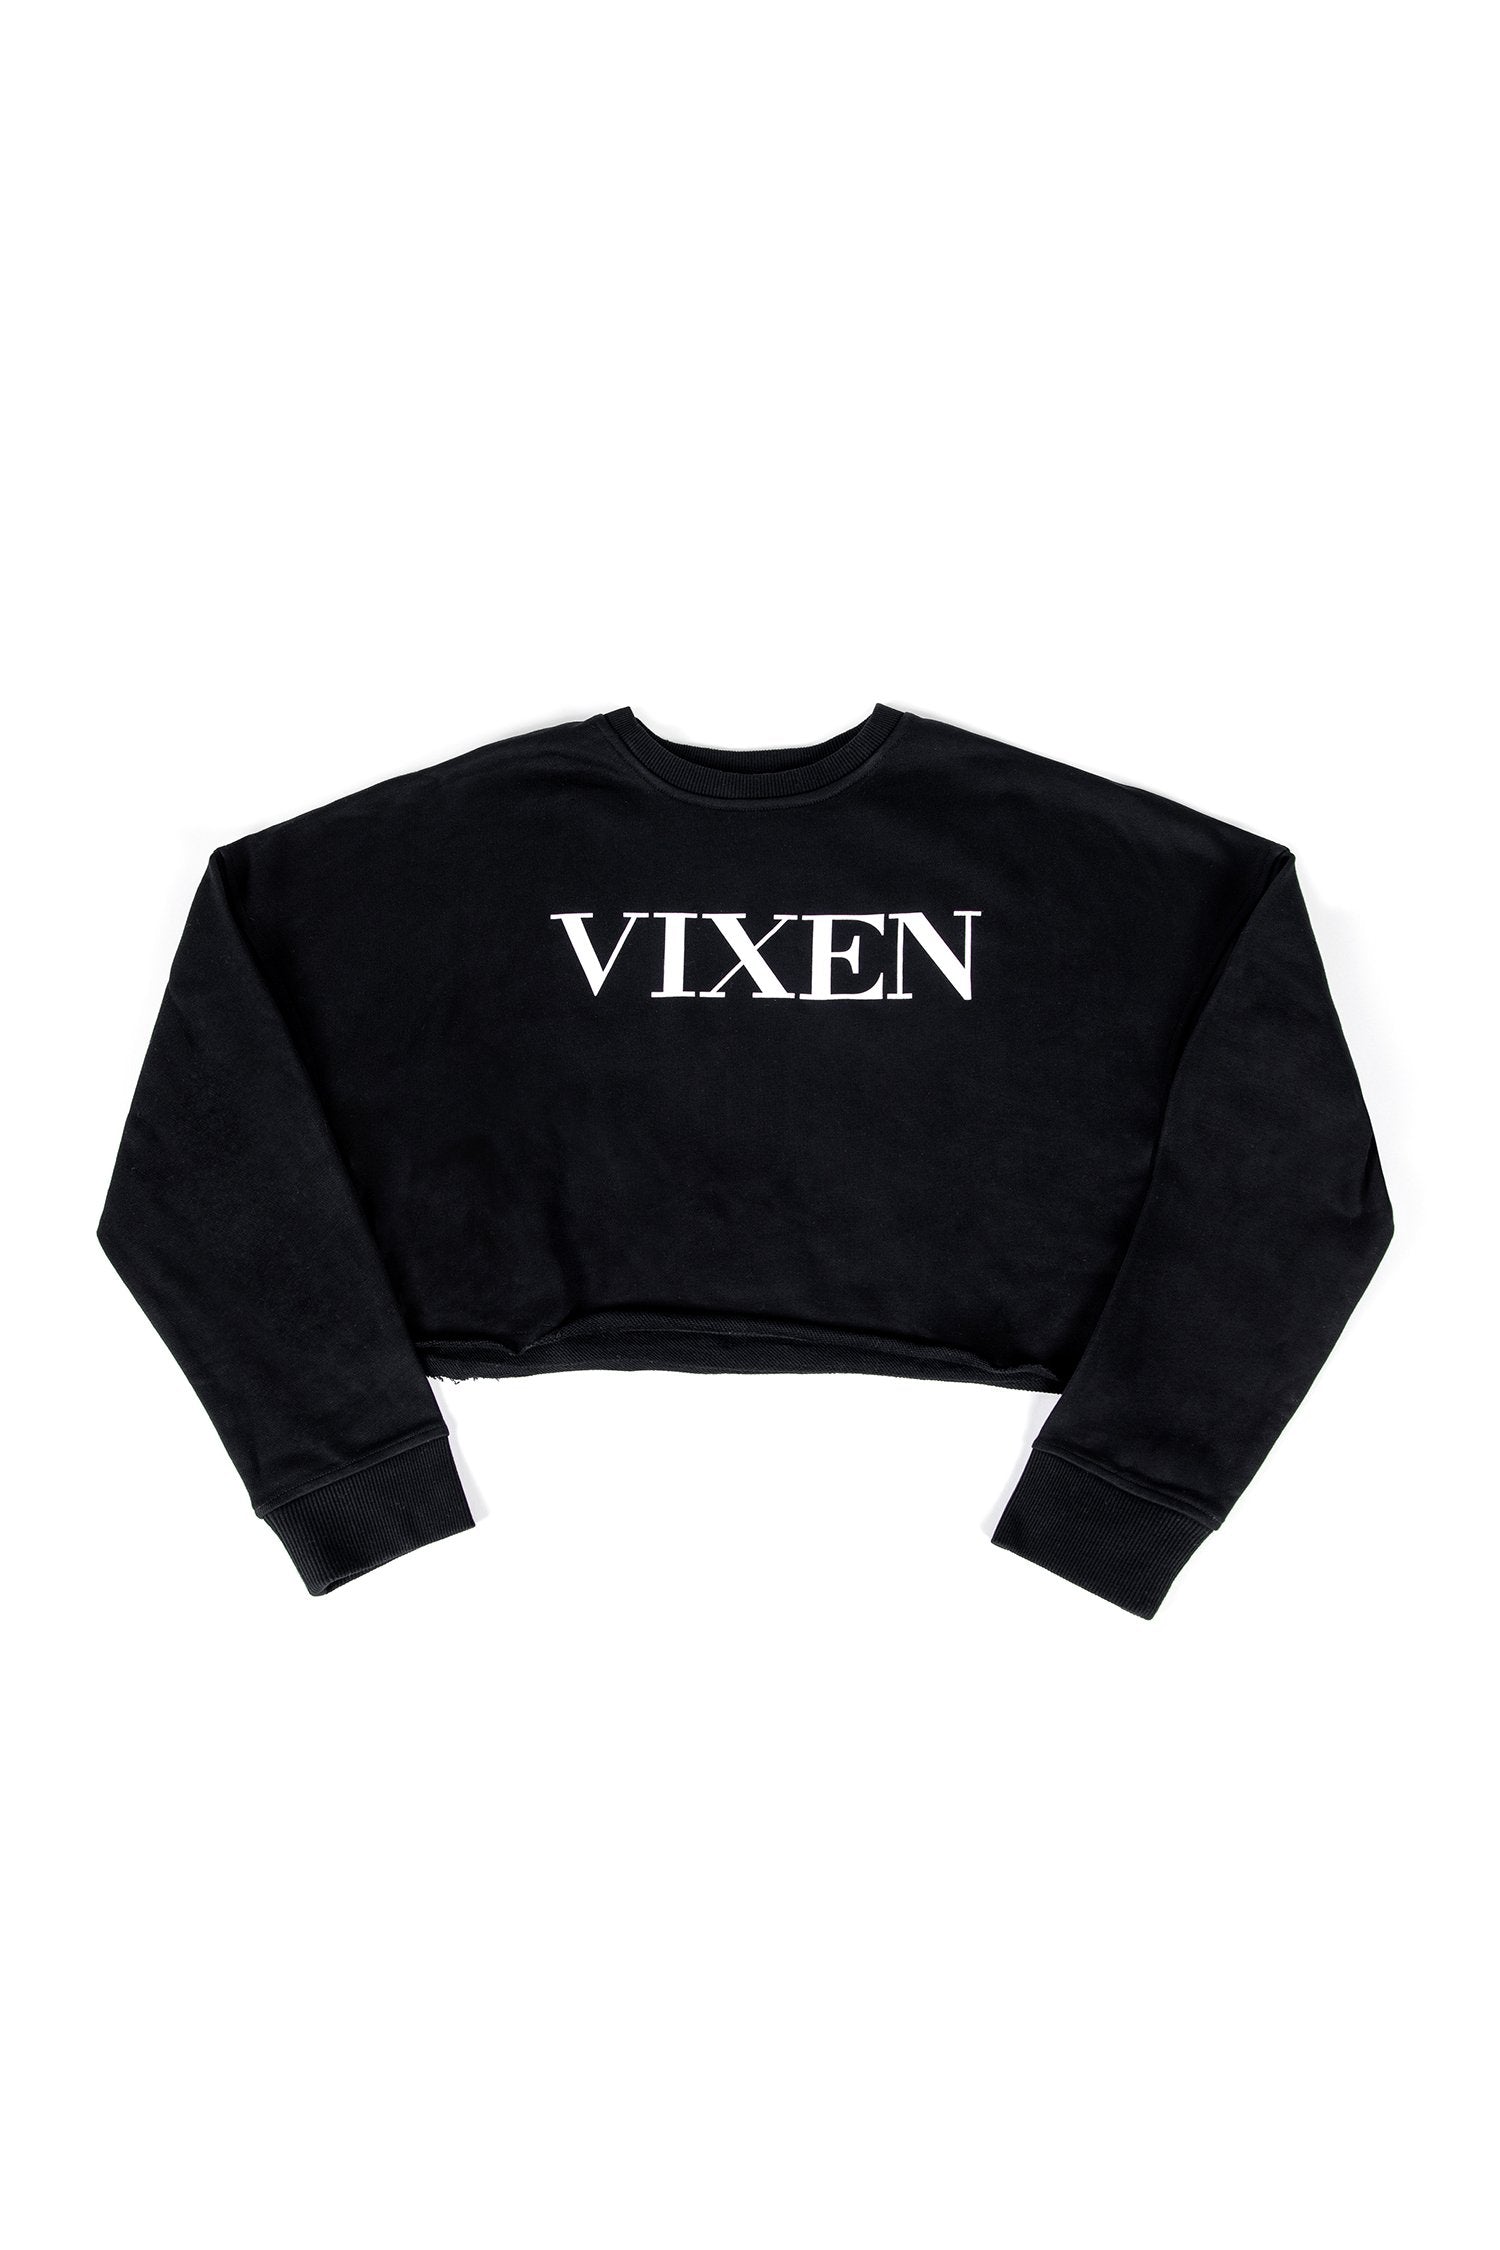 Vixen Cropped Loungewear Sweatshirt